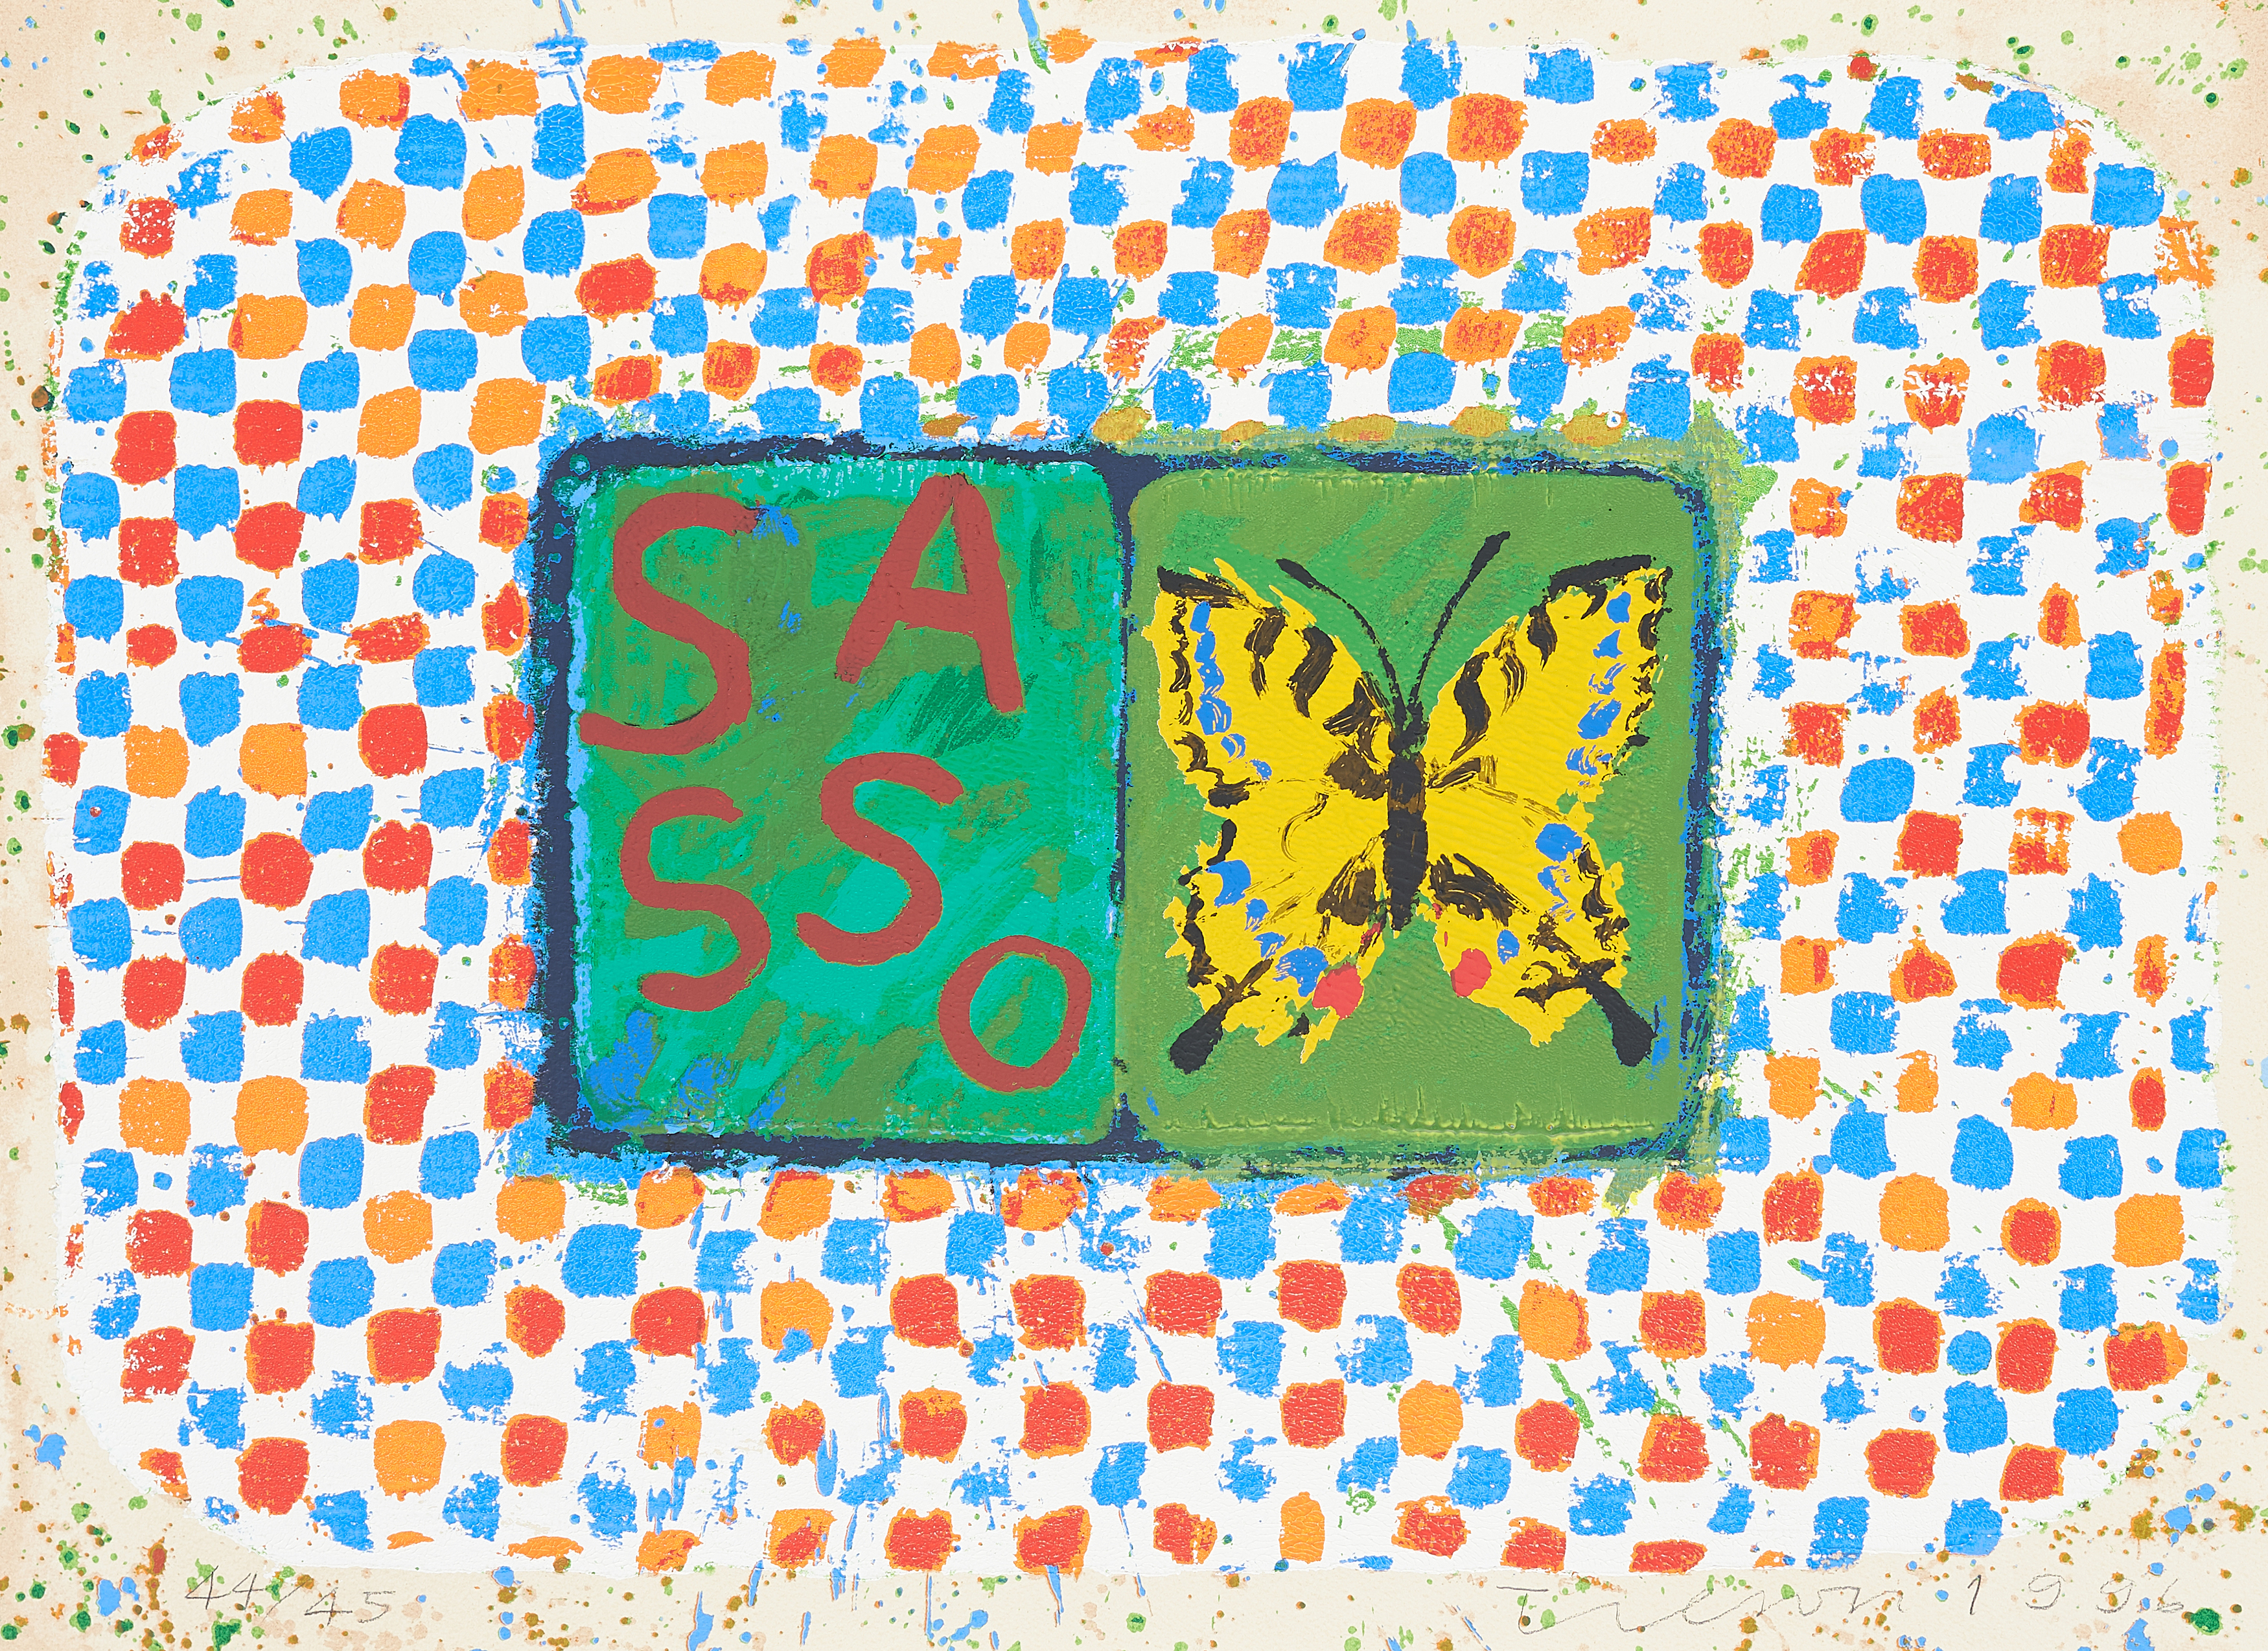 Joe Tilson - Conjunction Swallowtail Sasso, 70001-559, Van Ham Kunstauktionen